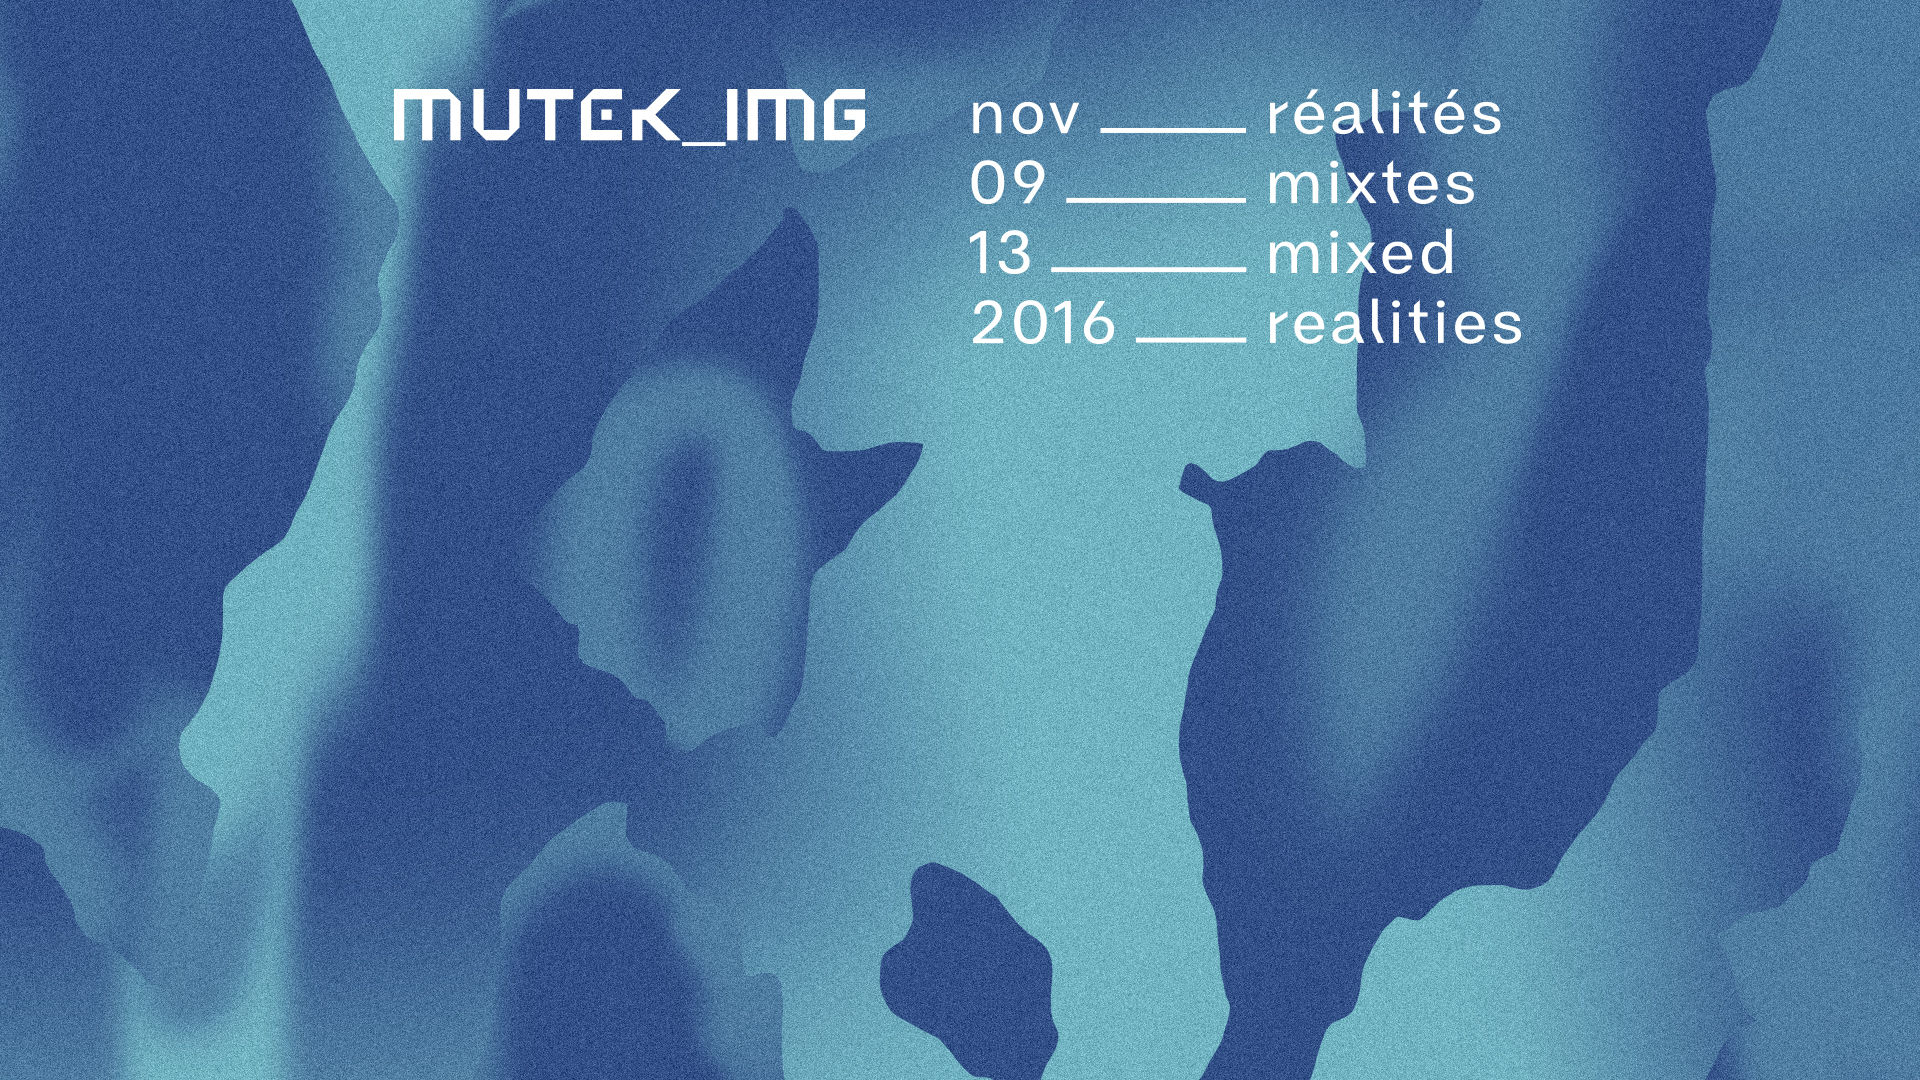 Réalités mixtes à MUTEK_IMG du 9 au 13 novembre